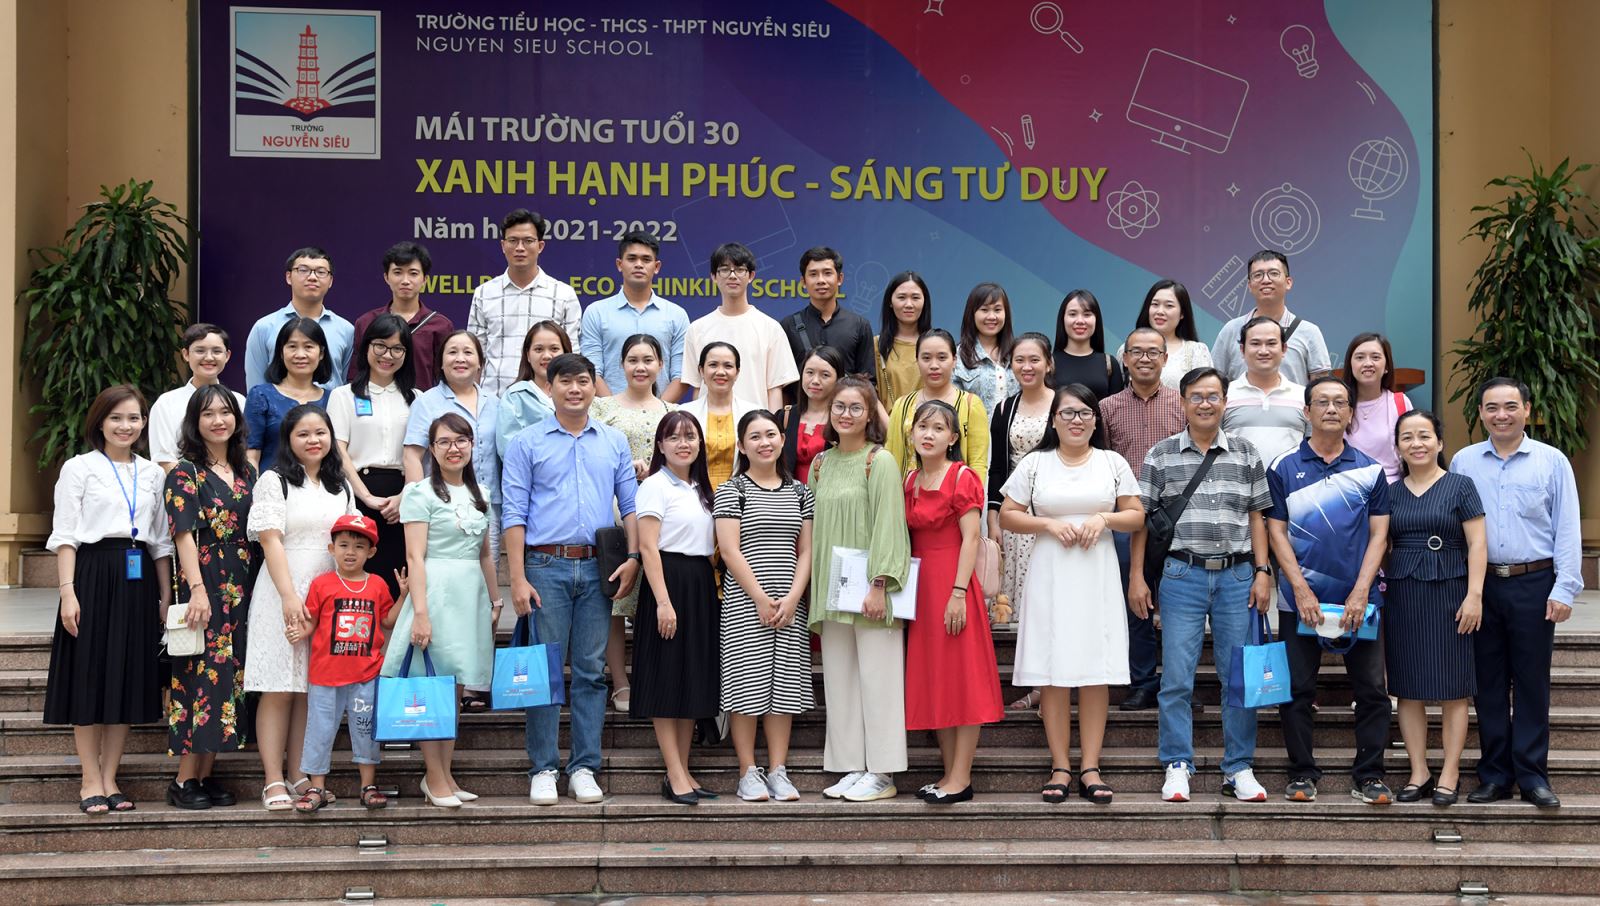 Trường Nguyễn Siêu chia sẻ mô hình giáo dục cùng các bạn Lê Quý Đôn (Bình Thuận)